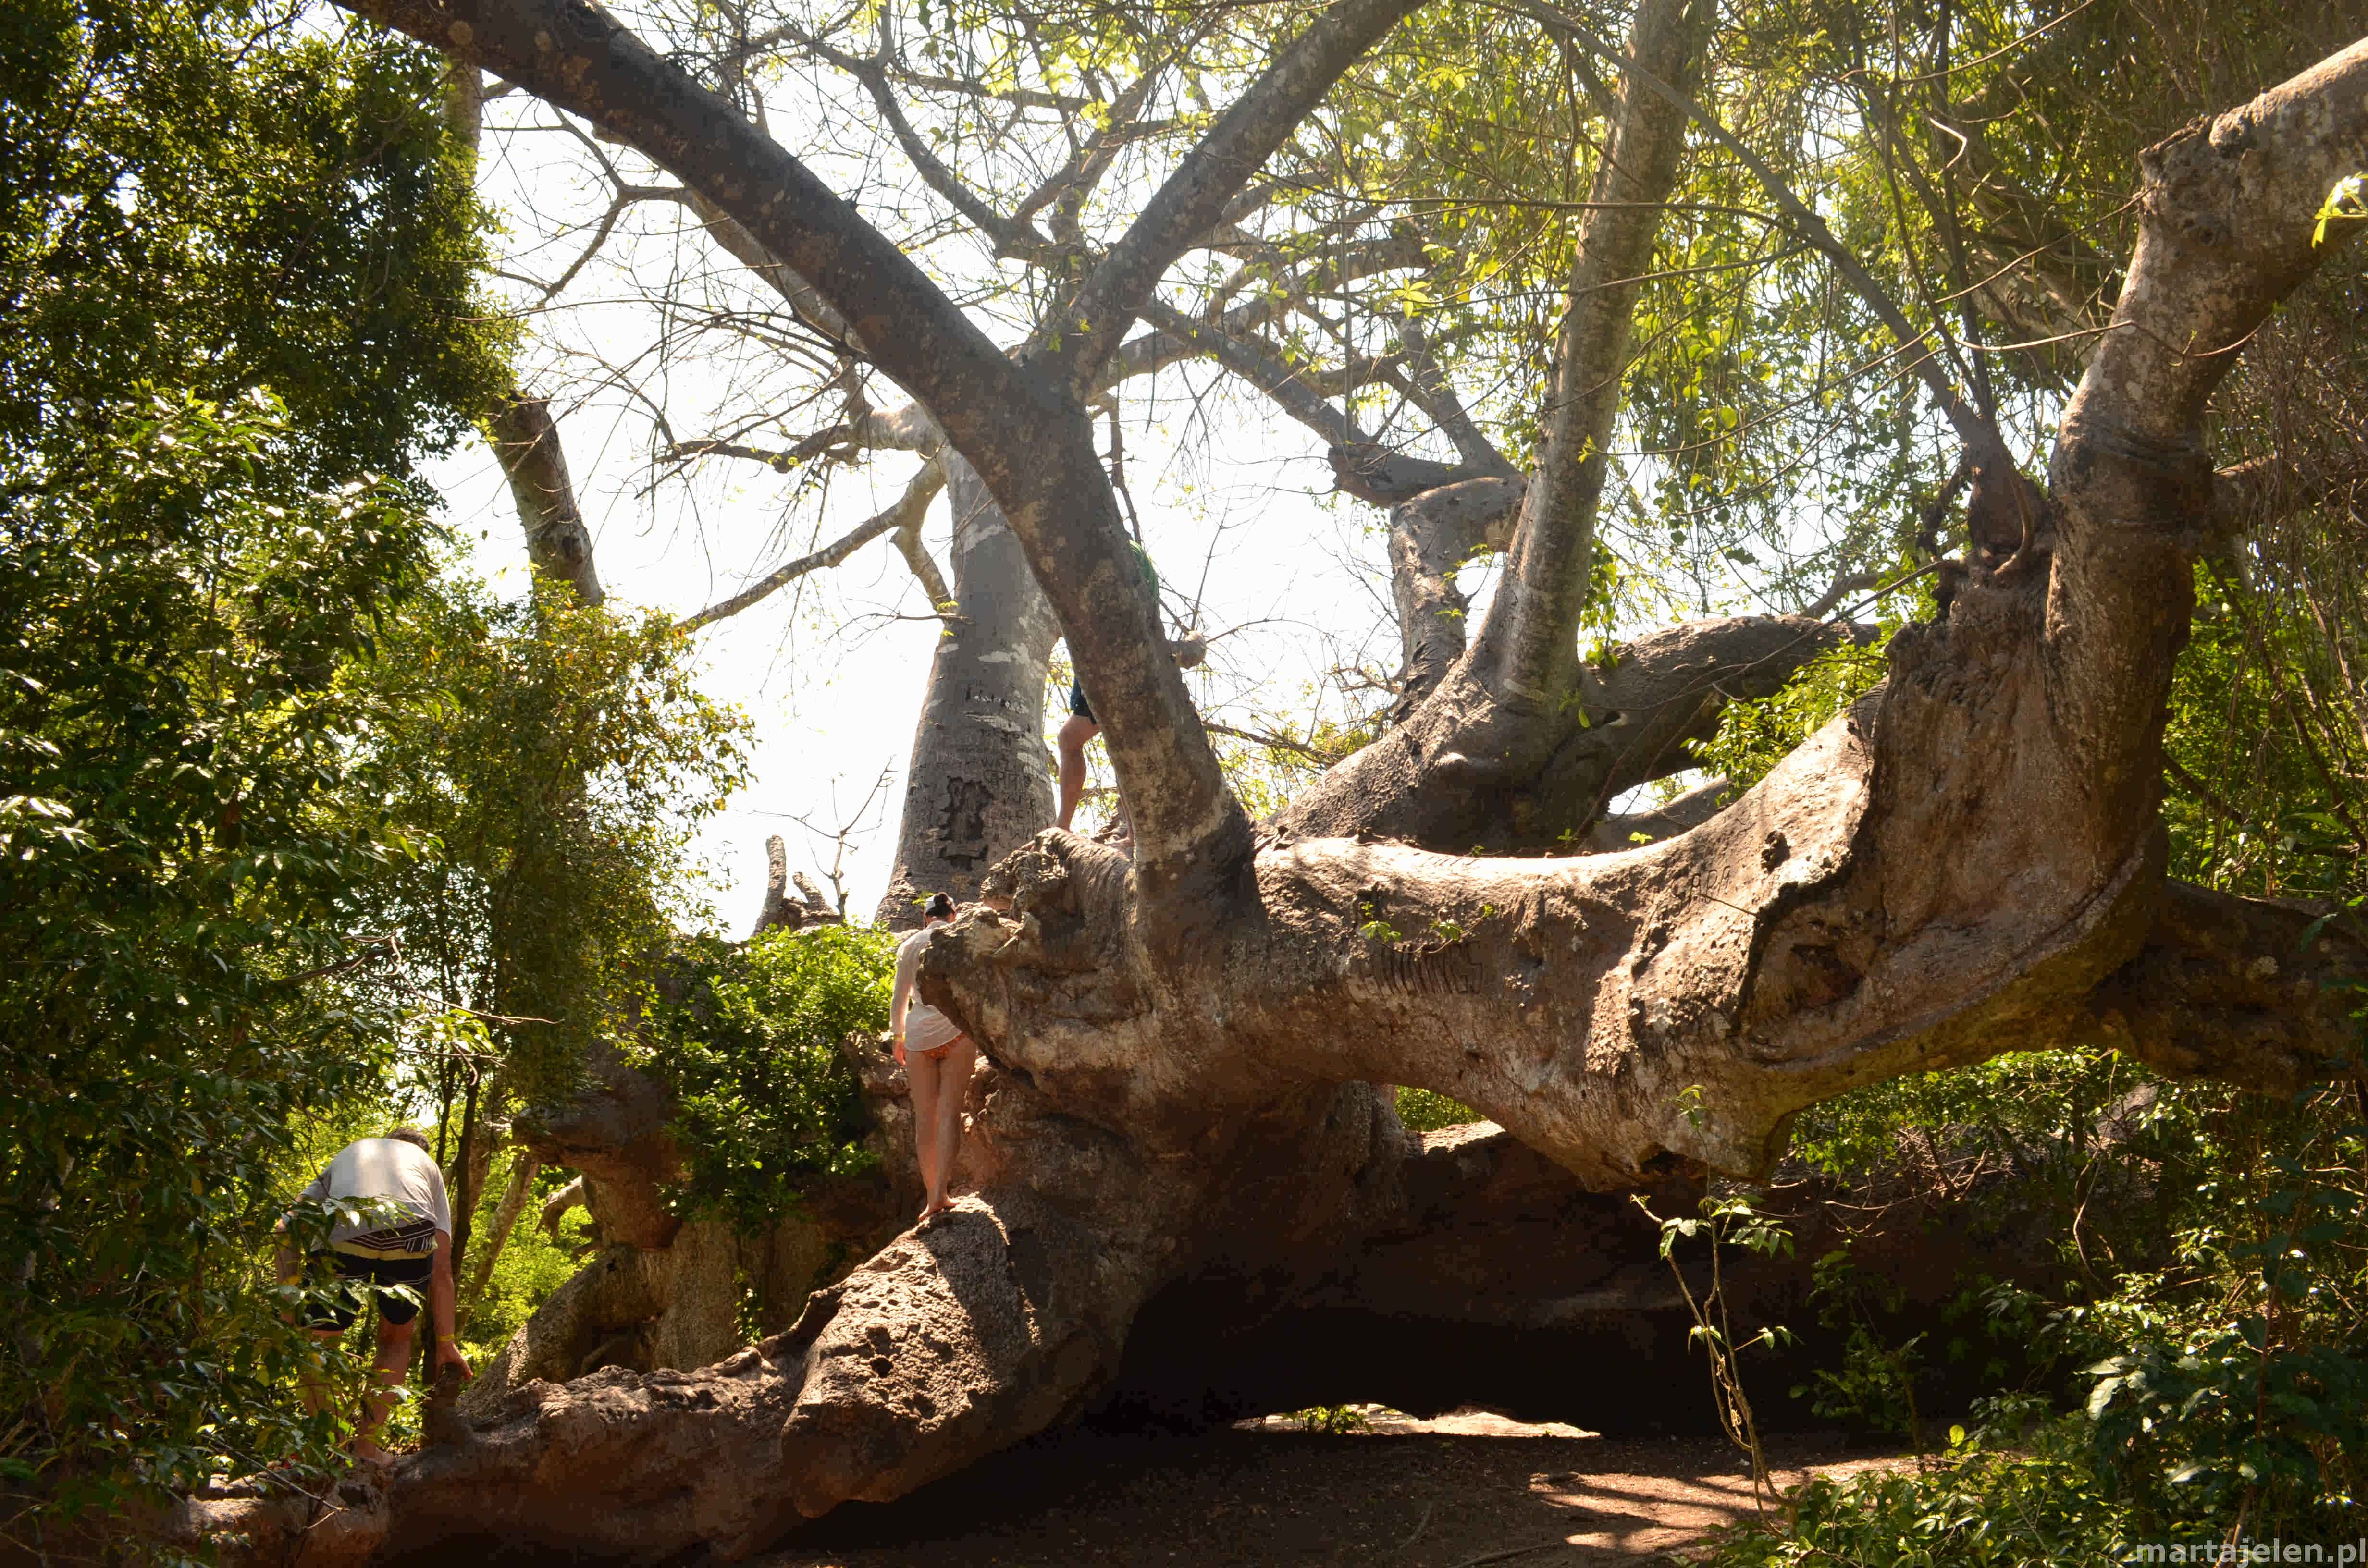 Zdjęcie baobabu rosnącego w poziomie